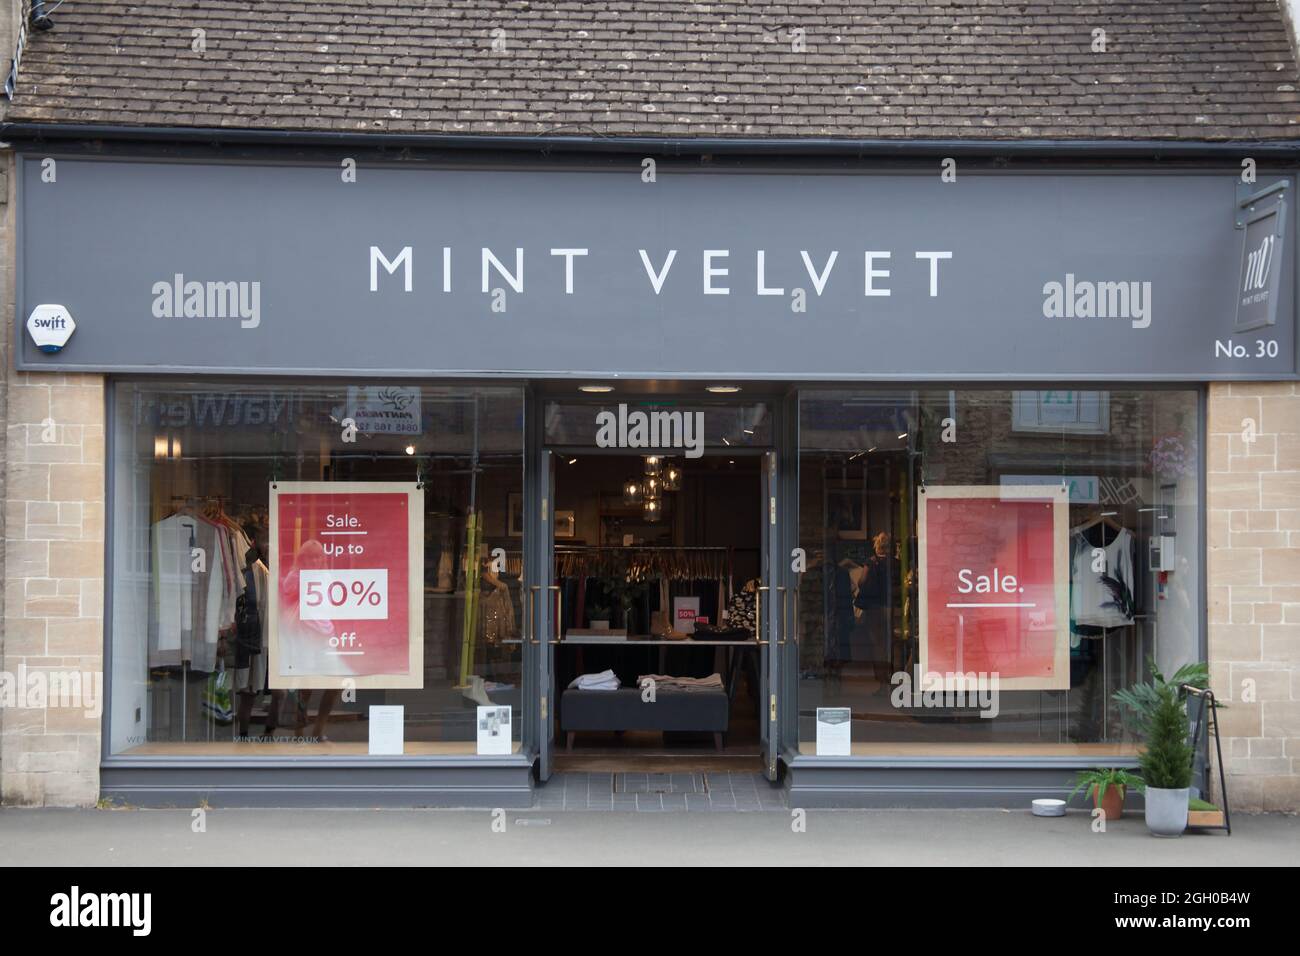 https://c8.alamy.com/comp/2GH0B4W/the-shop-mint-velvet-in-witney-uk-2GH0B4W.jpg